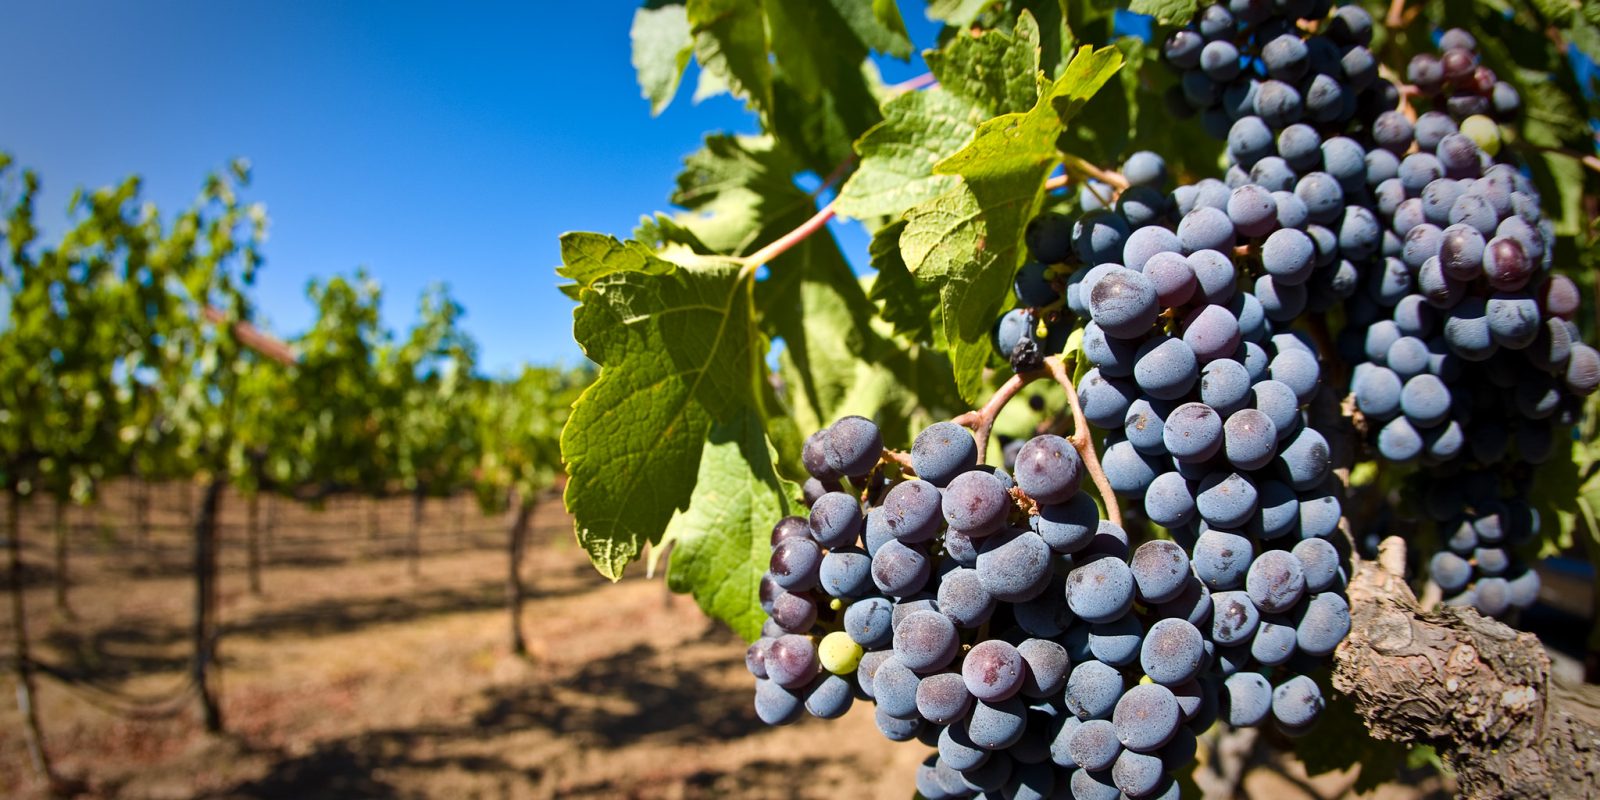 Grapes on a vine. Photo / Matt Maier